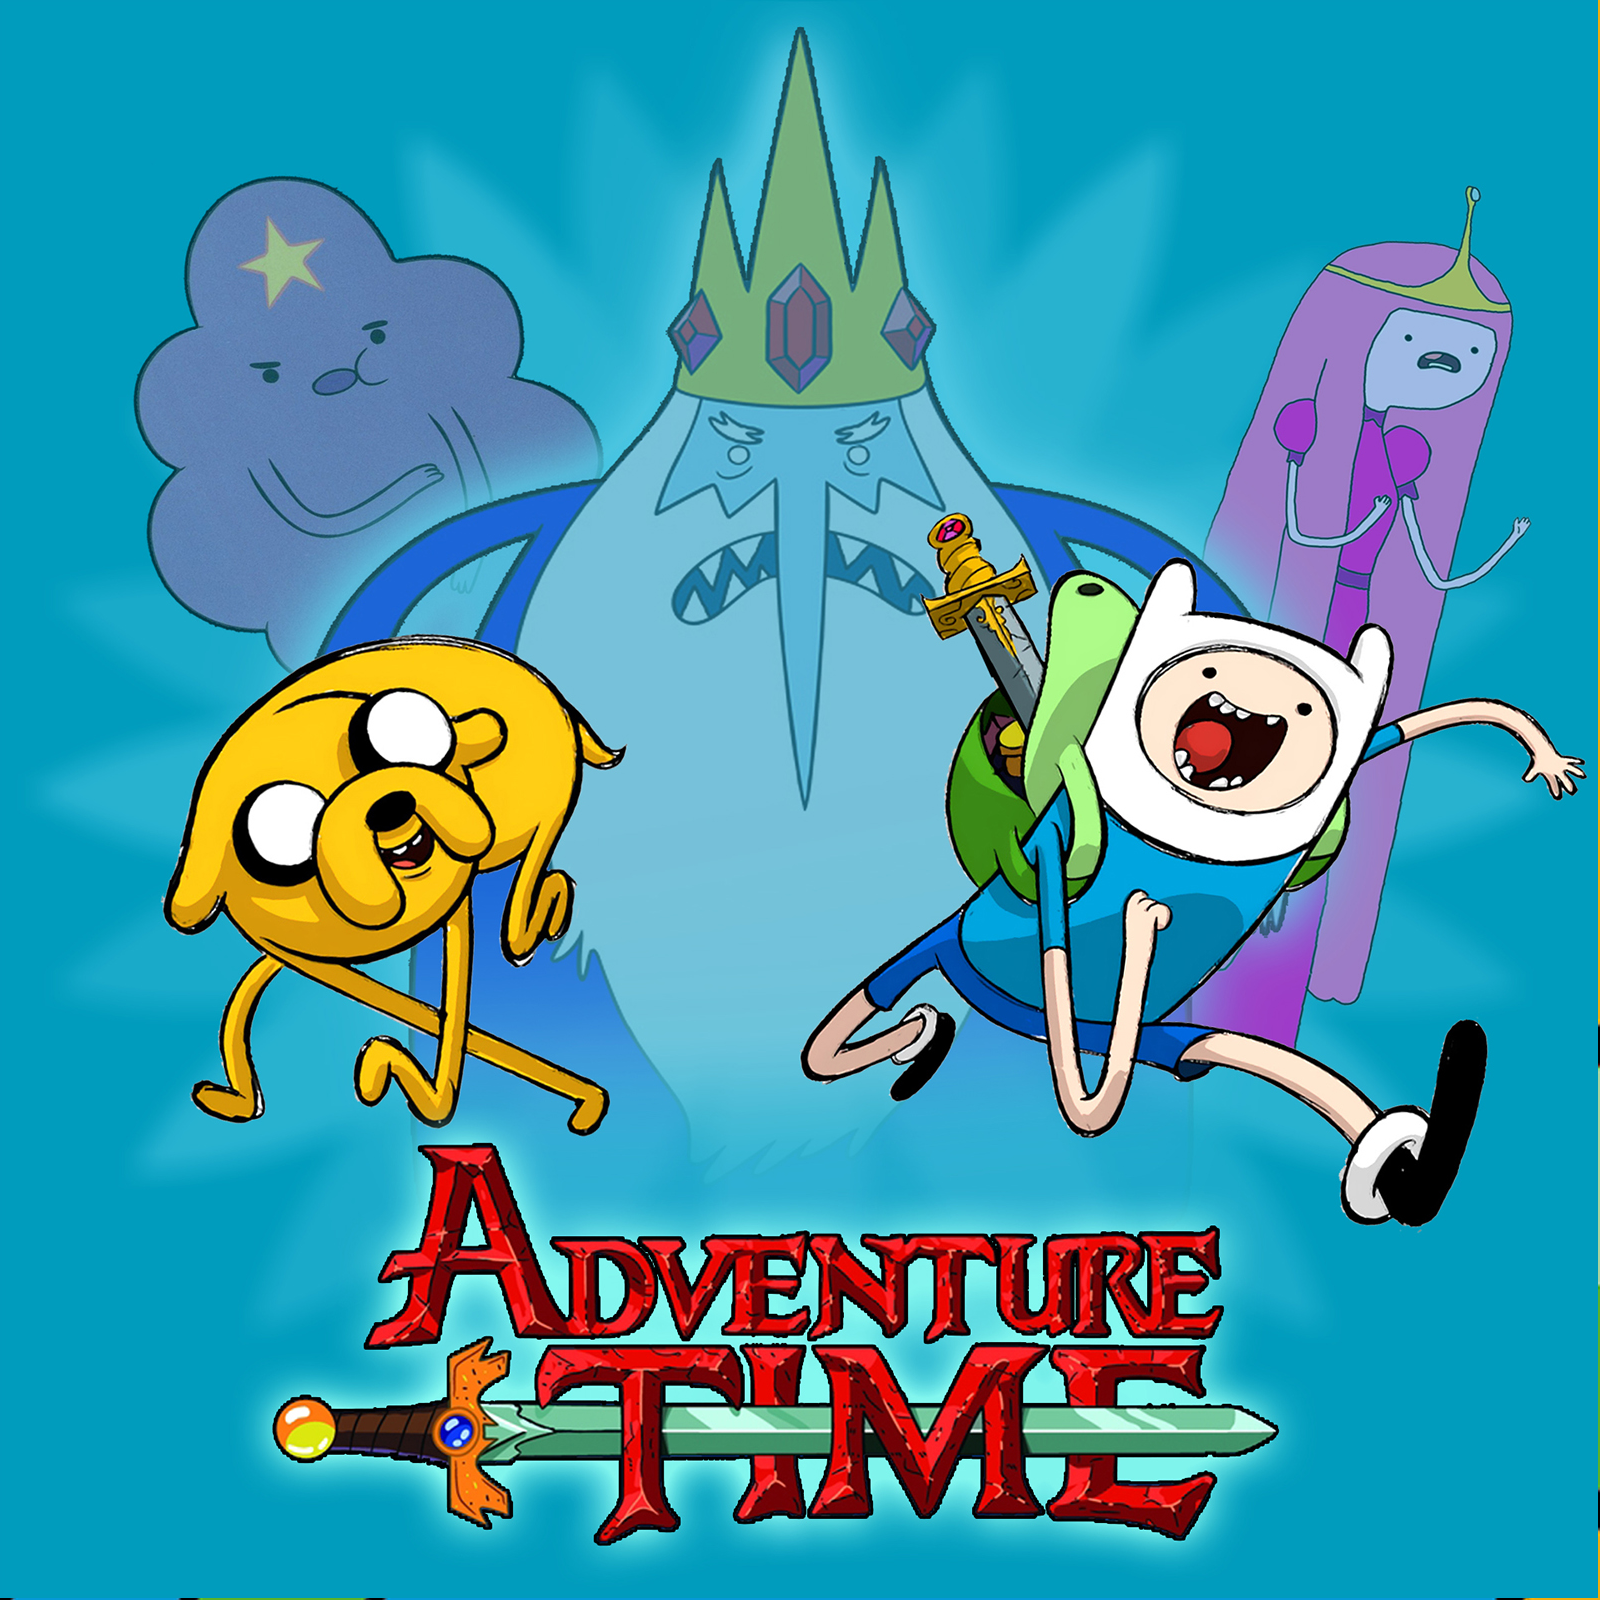 Adventure Time: Heroes of Oooのキャプチャ